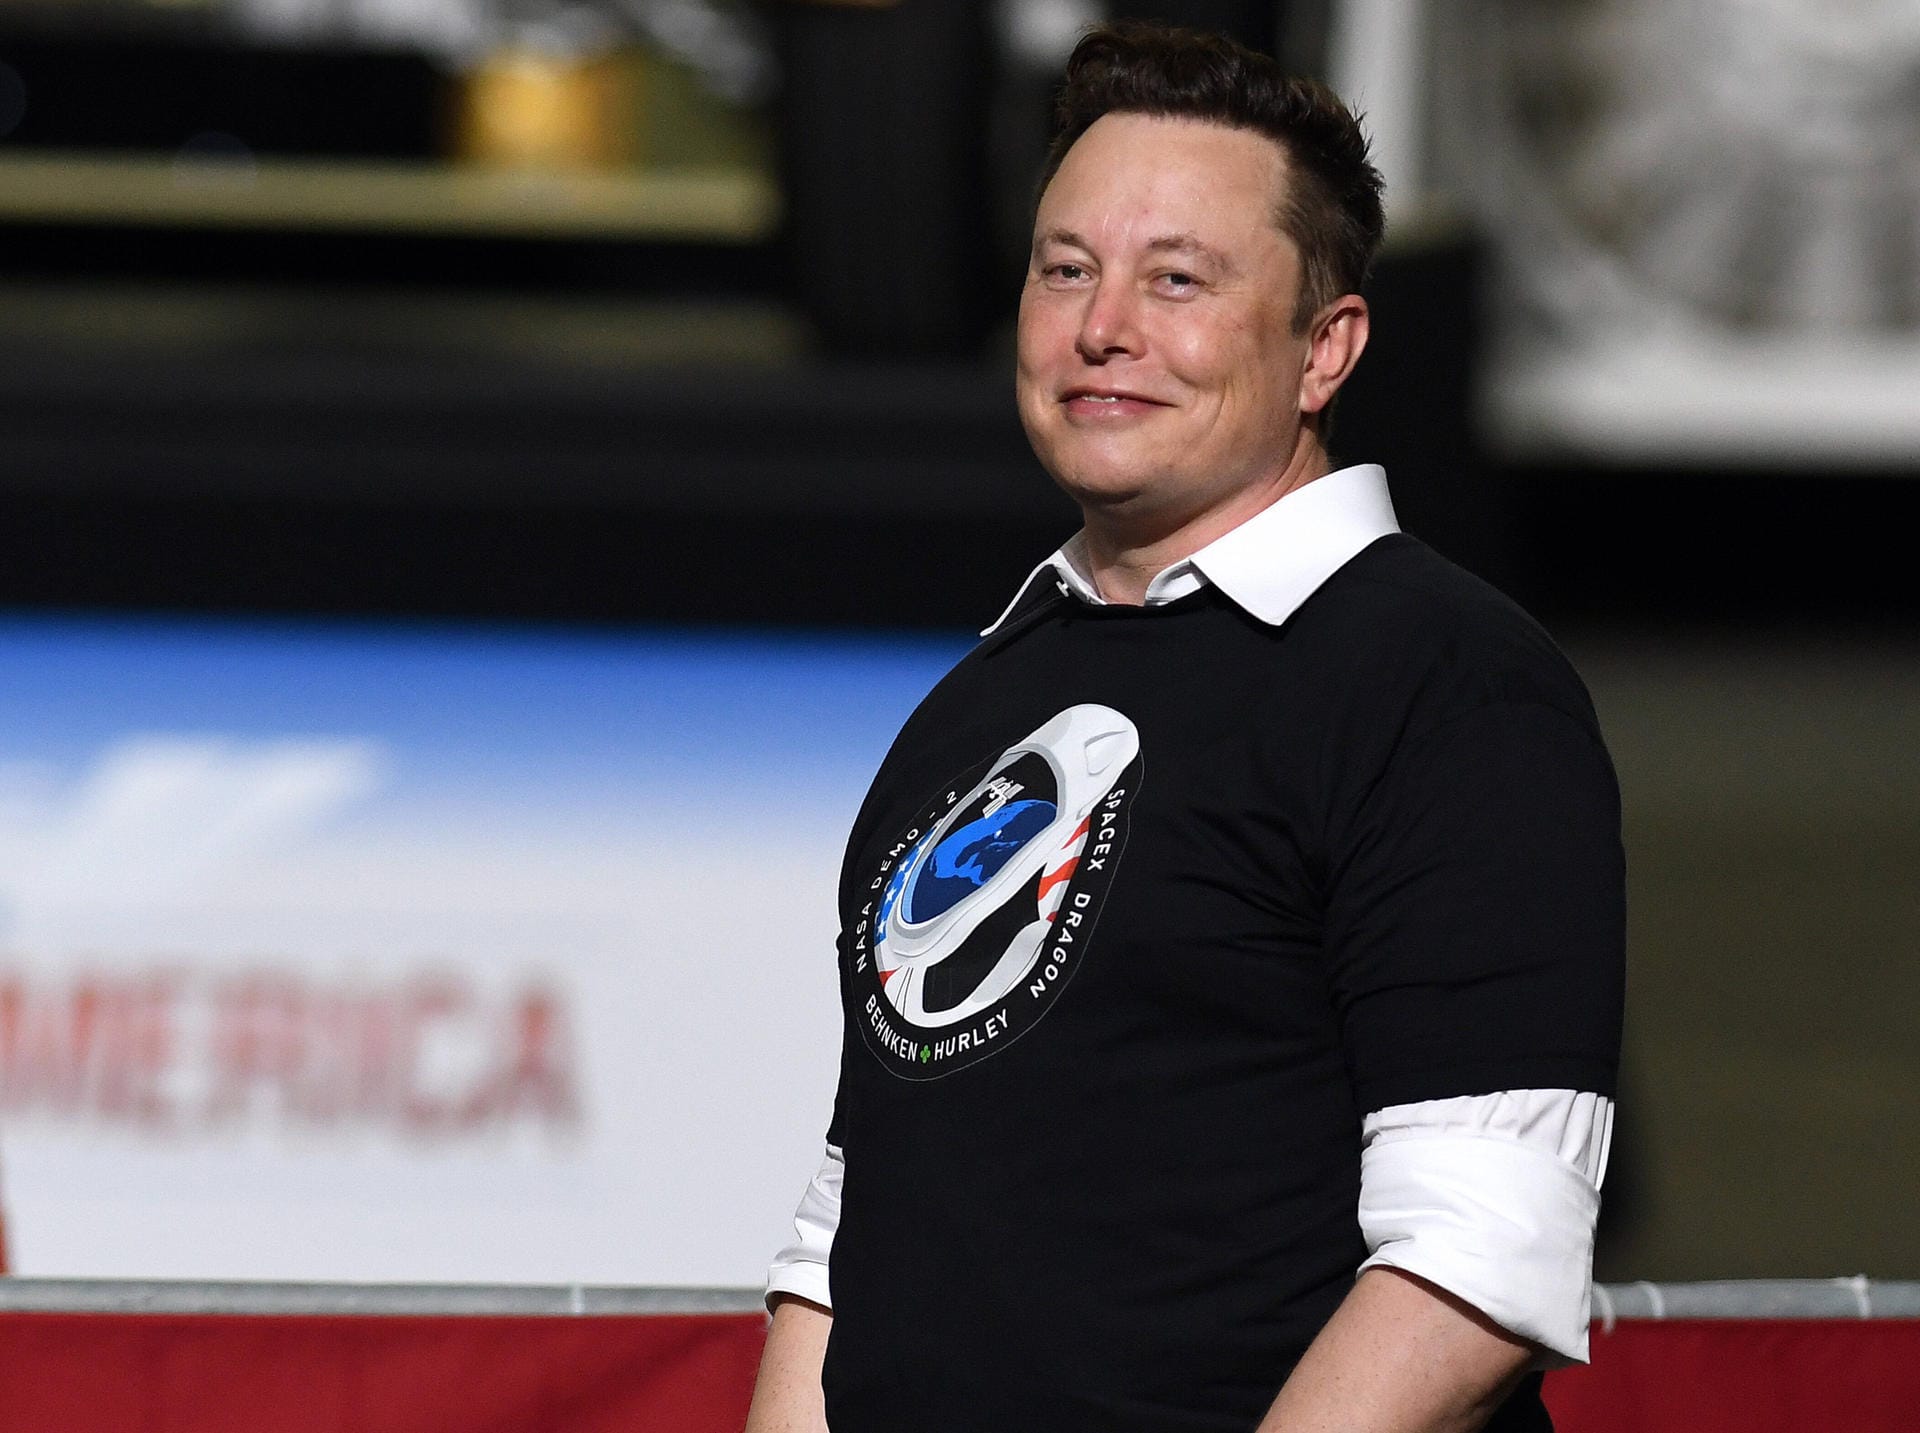 Tesla-Chef Elon Musk stieg 2002 ins Weltraumgeschäft ein und gründete SpaceX. Auch er will touristische Reisen ins All ermöglichen.